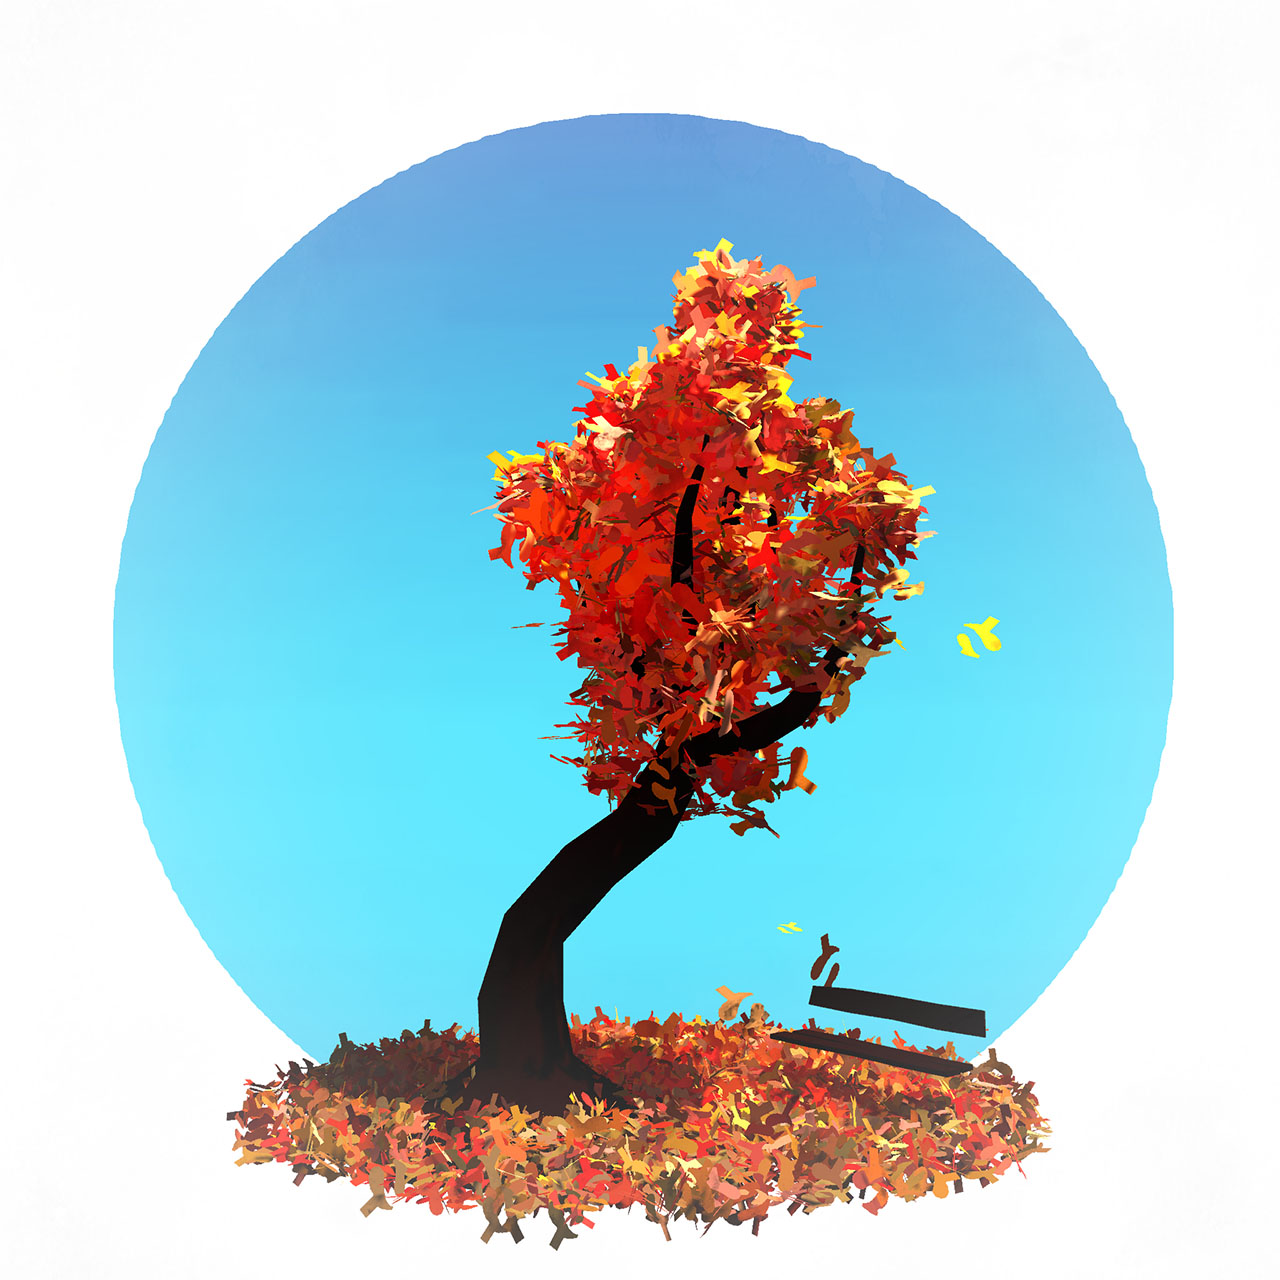 Autumn Tree by Josien Vos